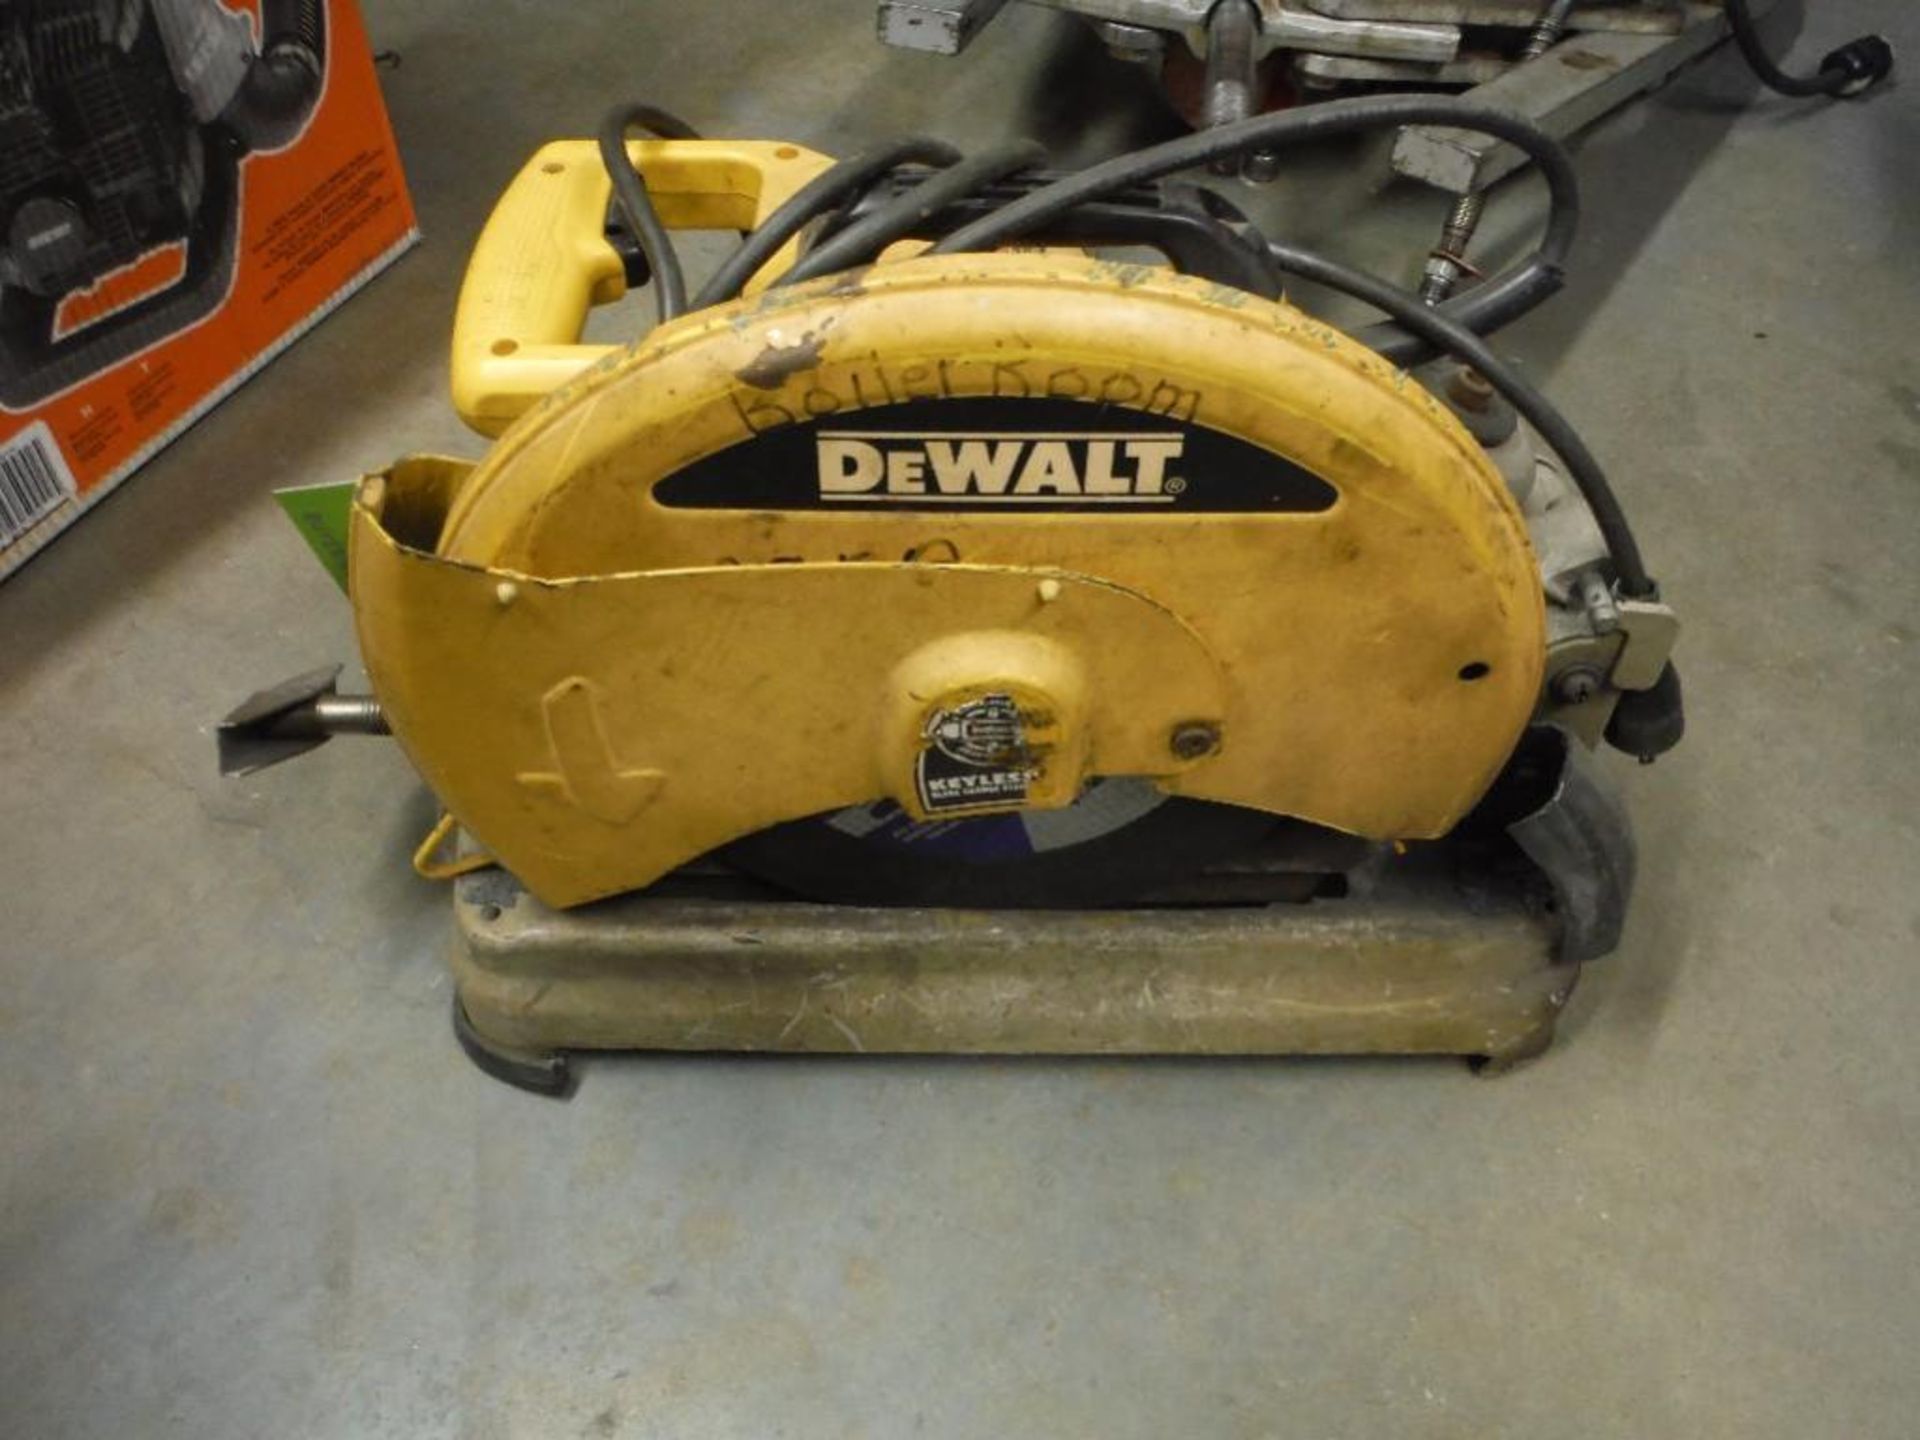 Dewalt abrasive cutoff saw. Rigging Fee: $10 - Image 3 of 5